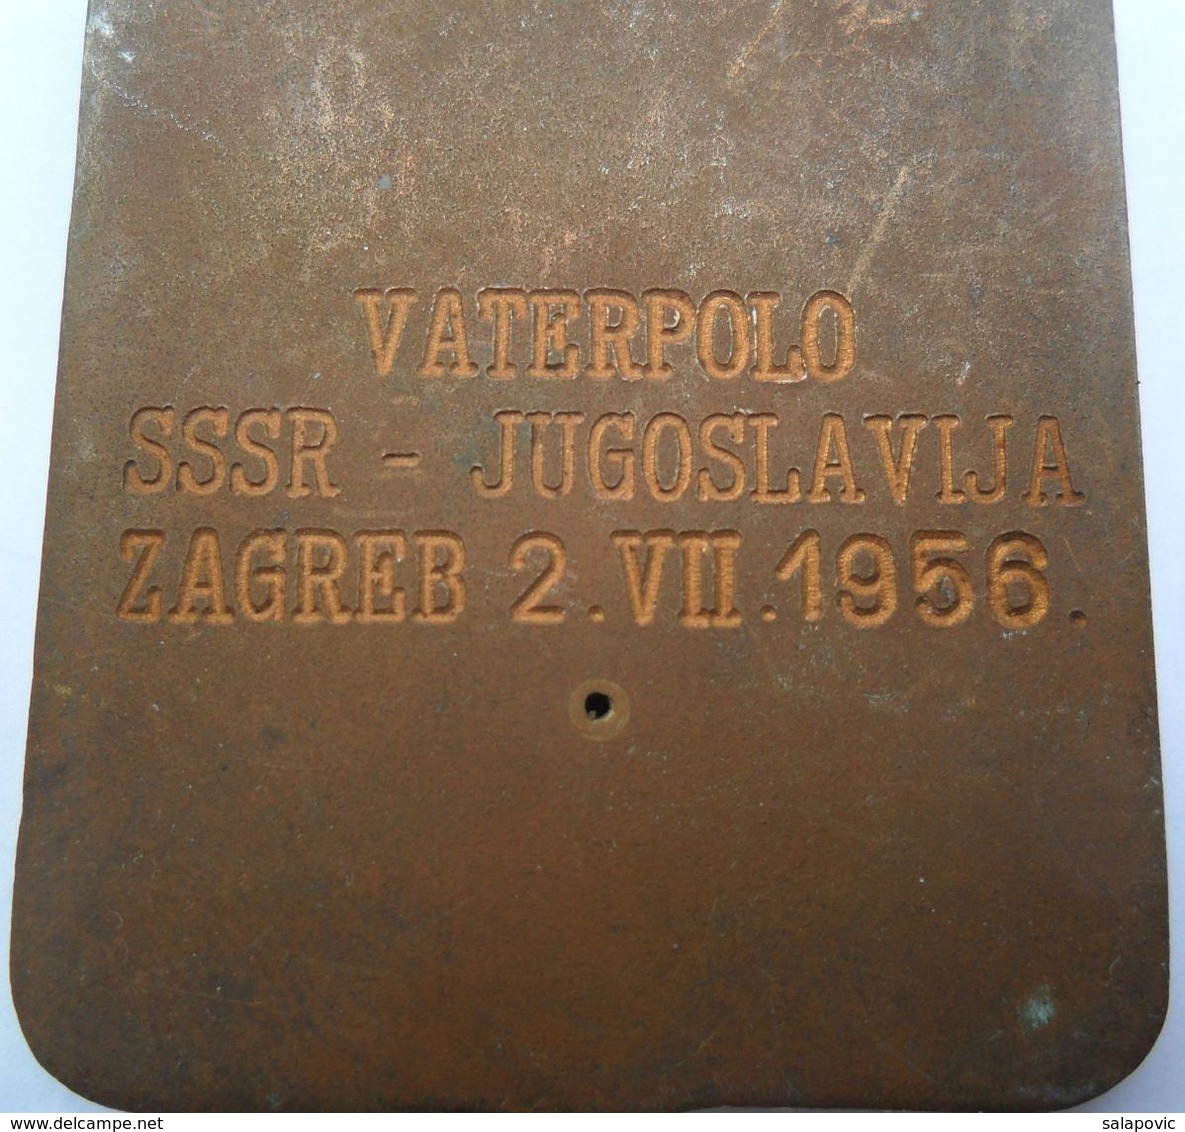 WATER POLO, VATERPOLO SSSR - JUGOSLAVIJA, ZAGREB 2.7.1956  PLAQUE PLIM - Natación